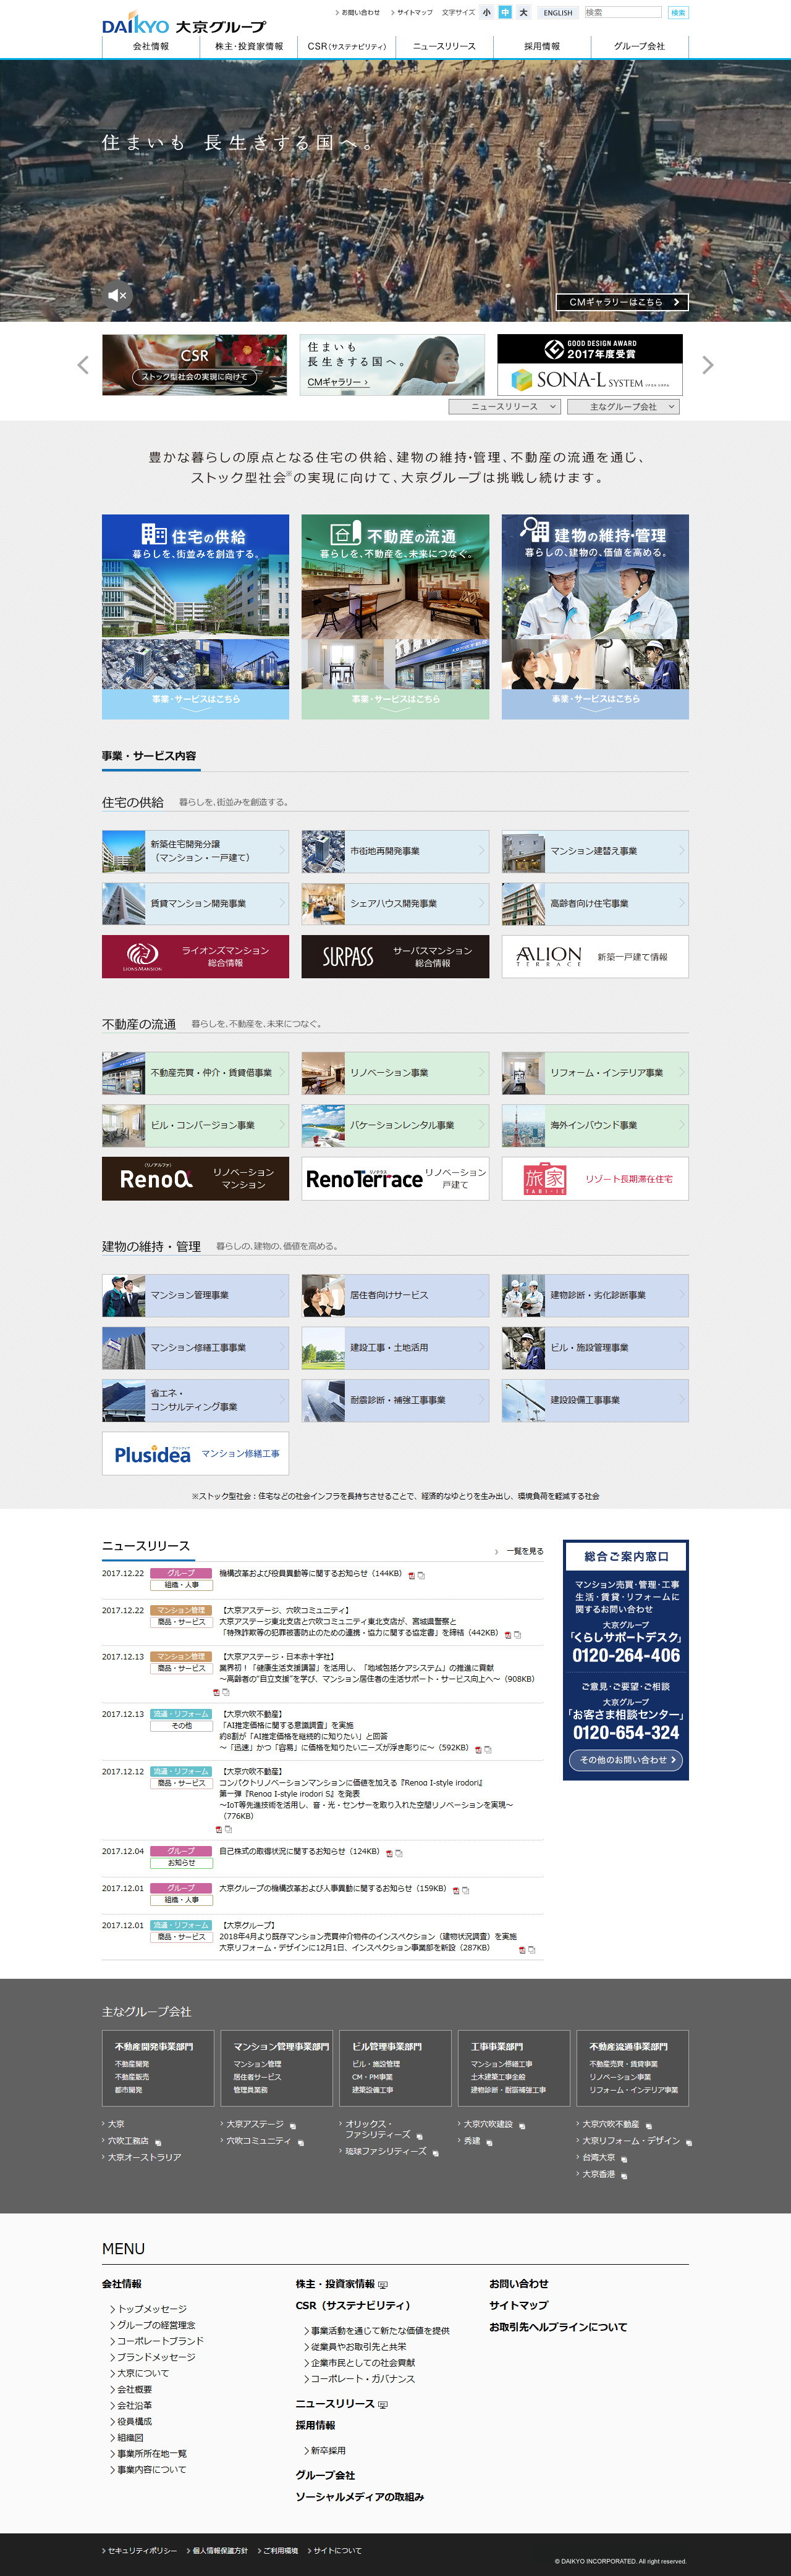 大京のWebサイトのスクリーンショット